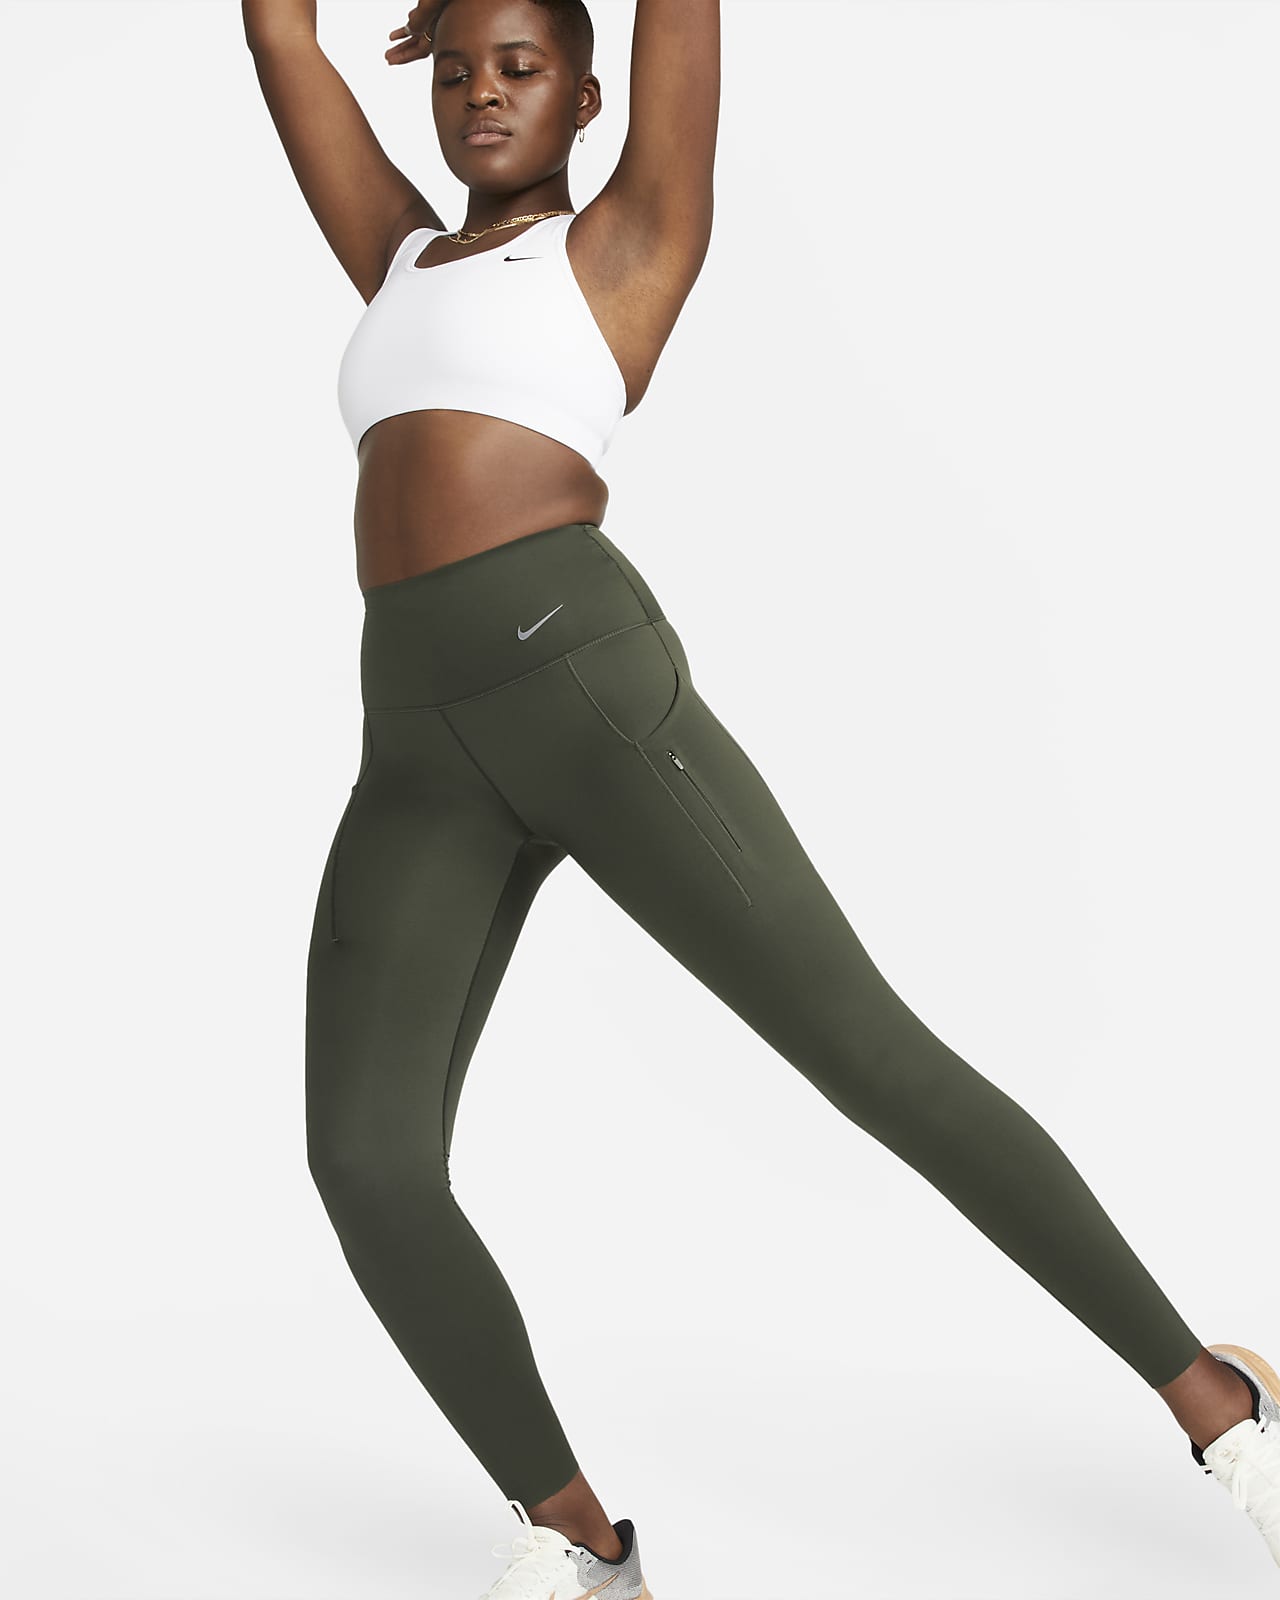 Nike Go Leggings in voller Länge mit Taschen, starkem Halt und hohem Bund für Damen